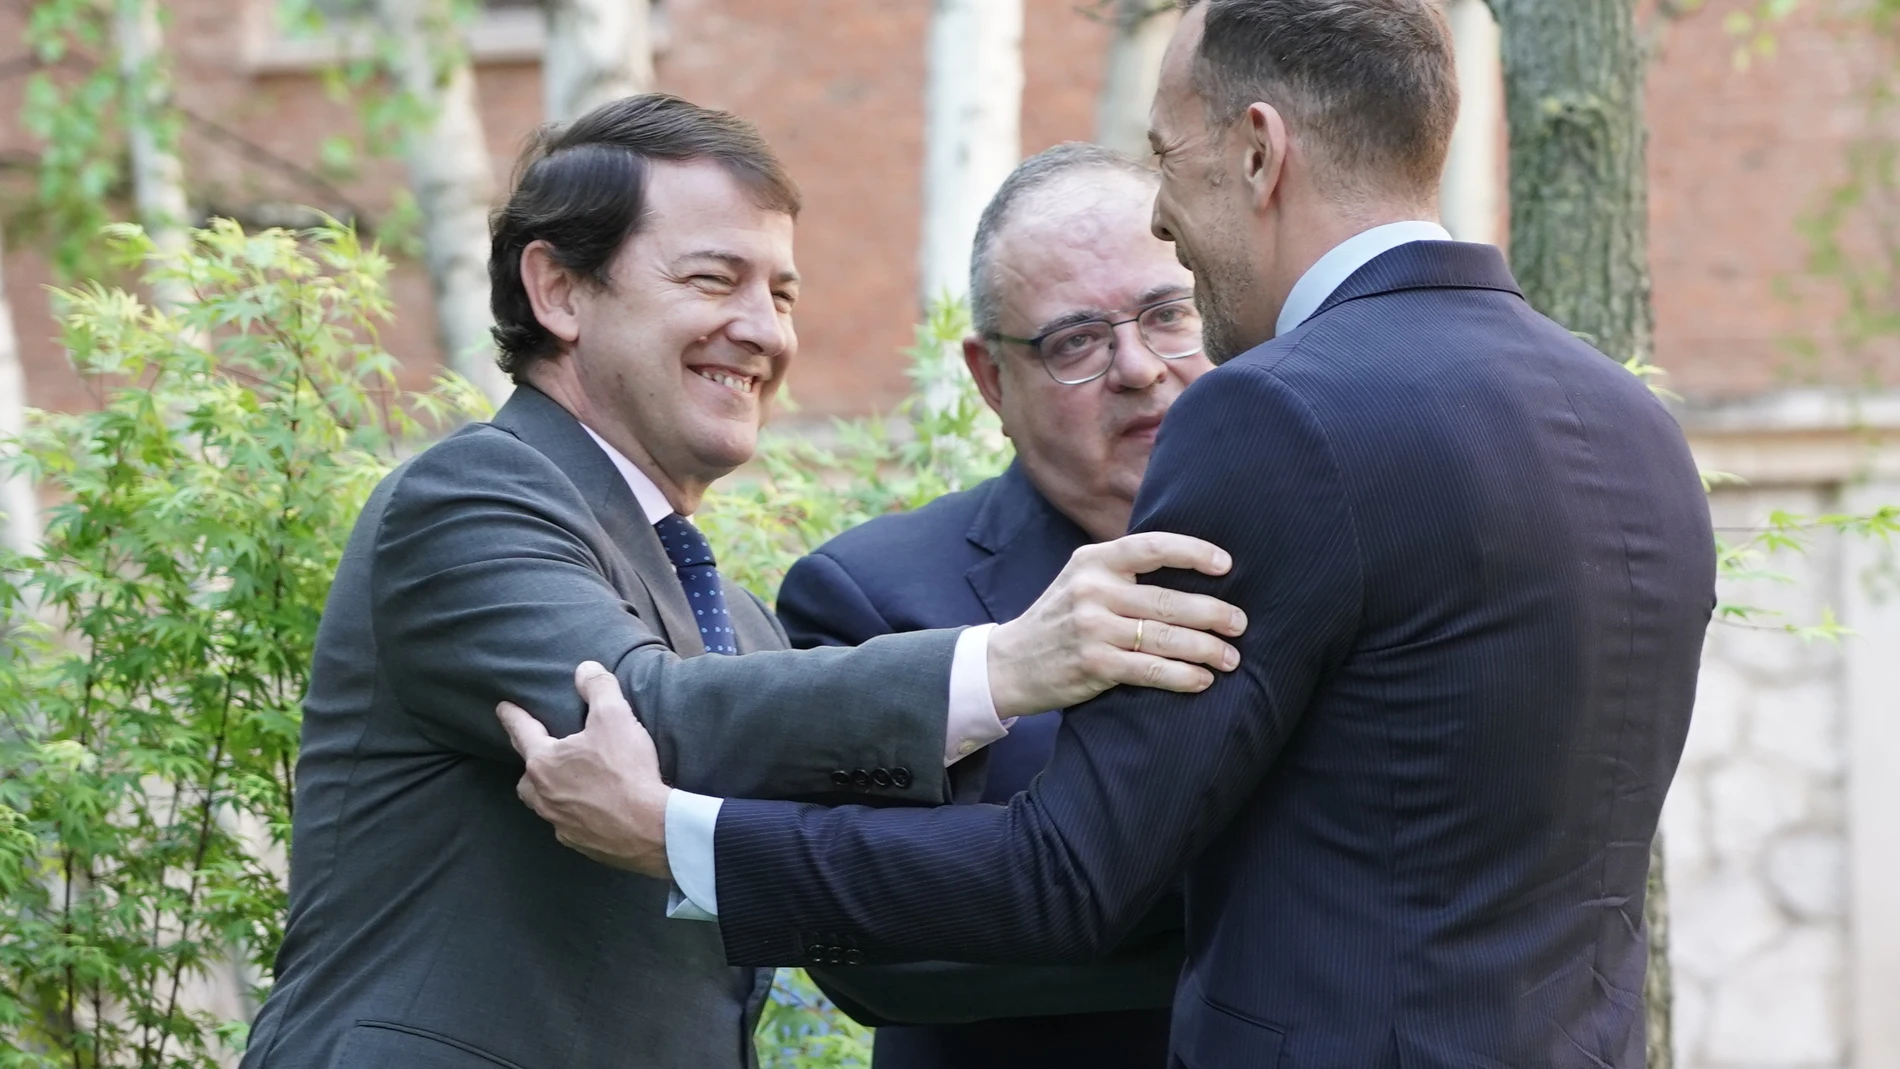 El presidente de Castilla y León, Alfonso Fernández Mañueco, saluda a su nuevo jefe de Gabinete, Héctor Palencia, en presencia del consejero de Sanidad, Alejandro Vázquez